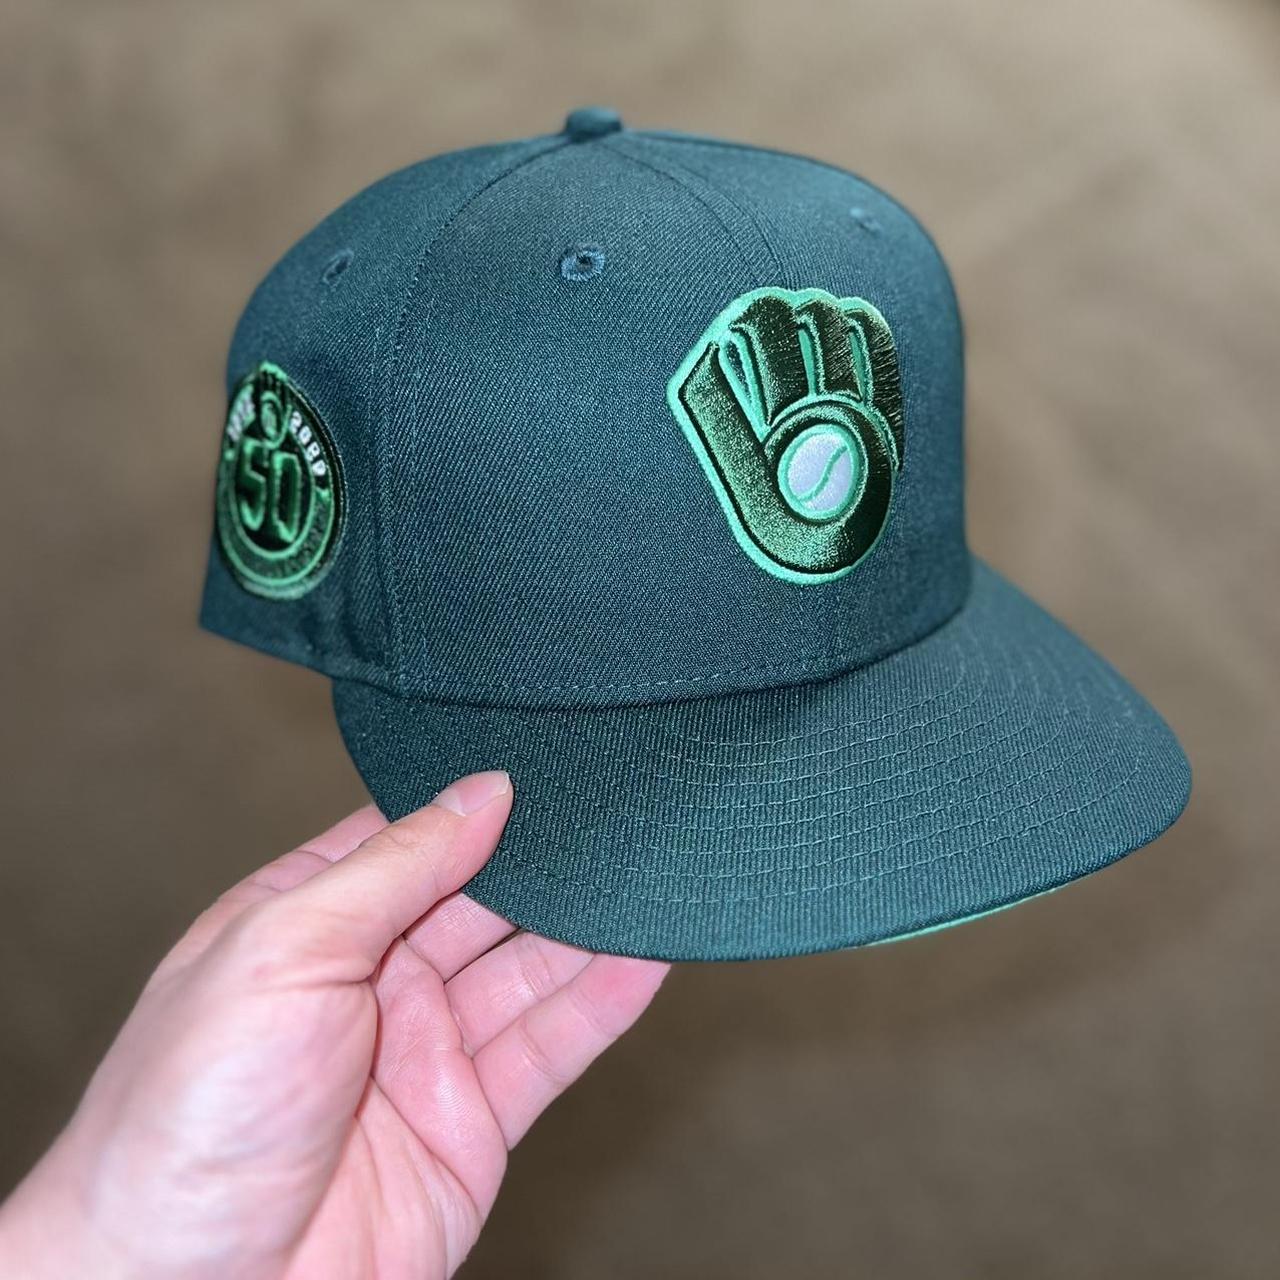 New Era Men's Caps - Green